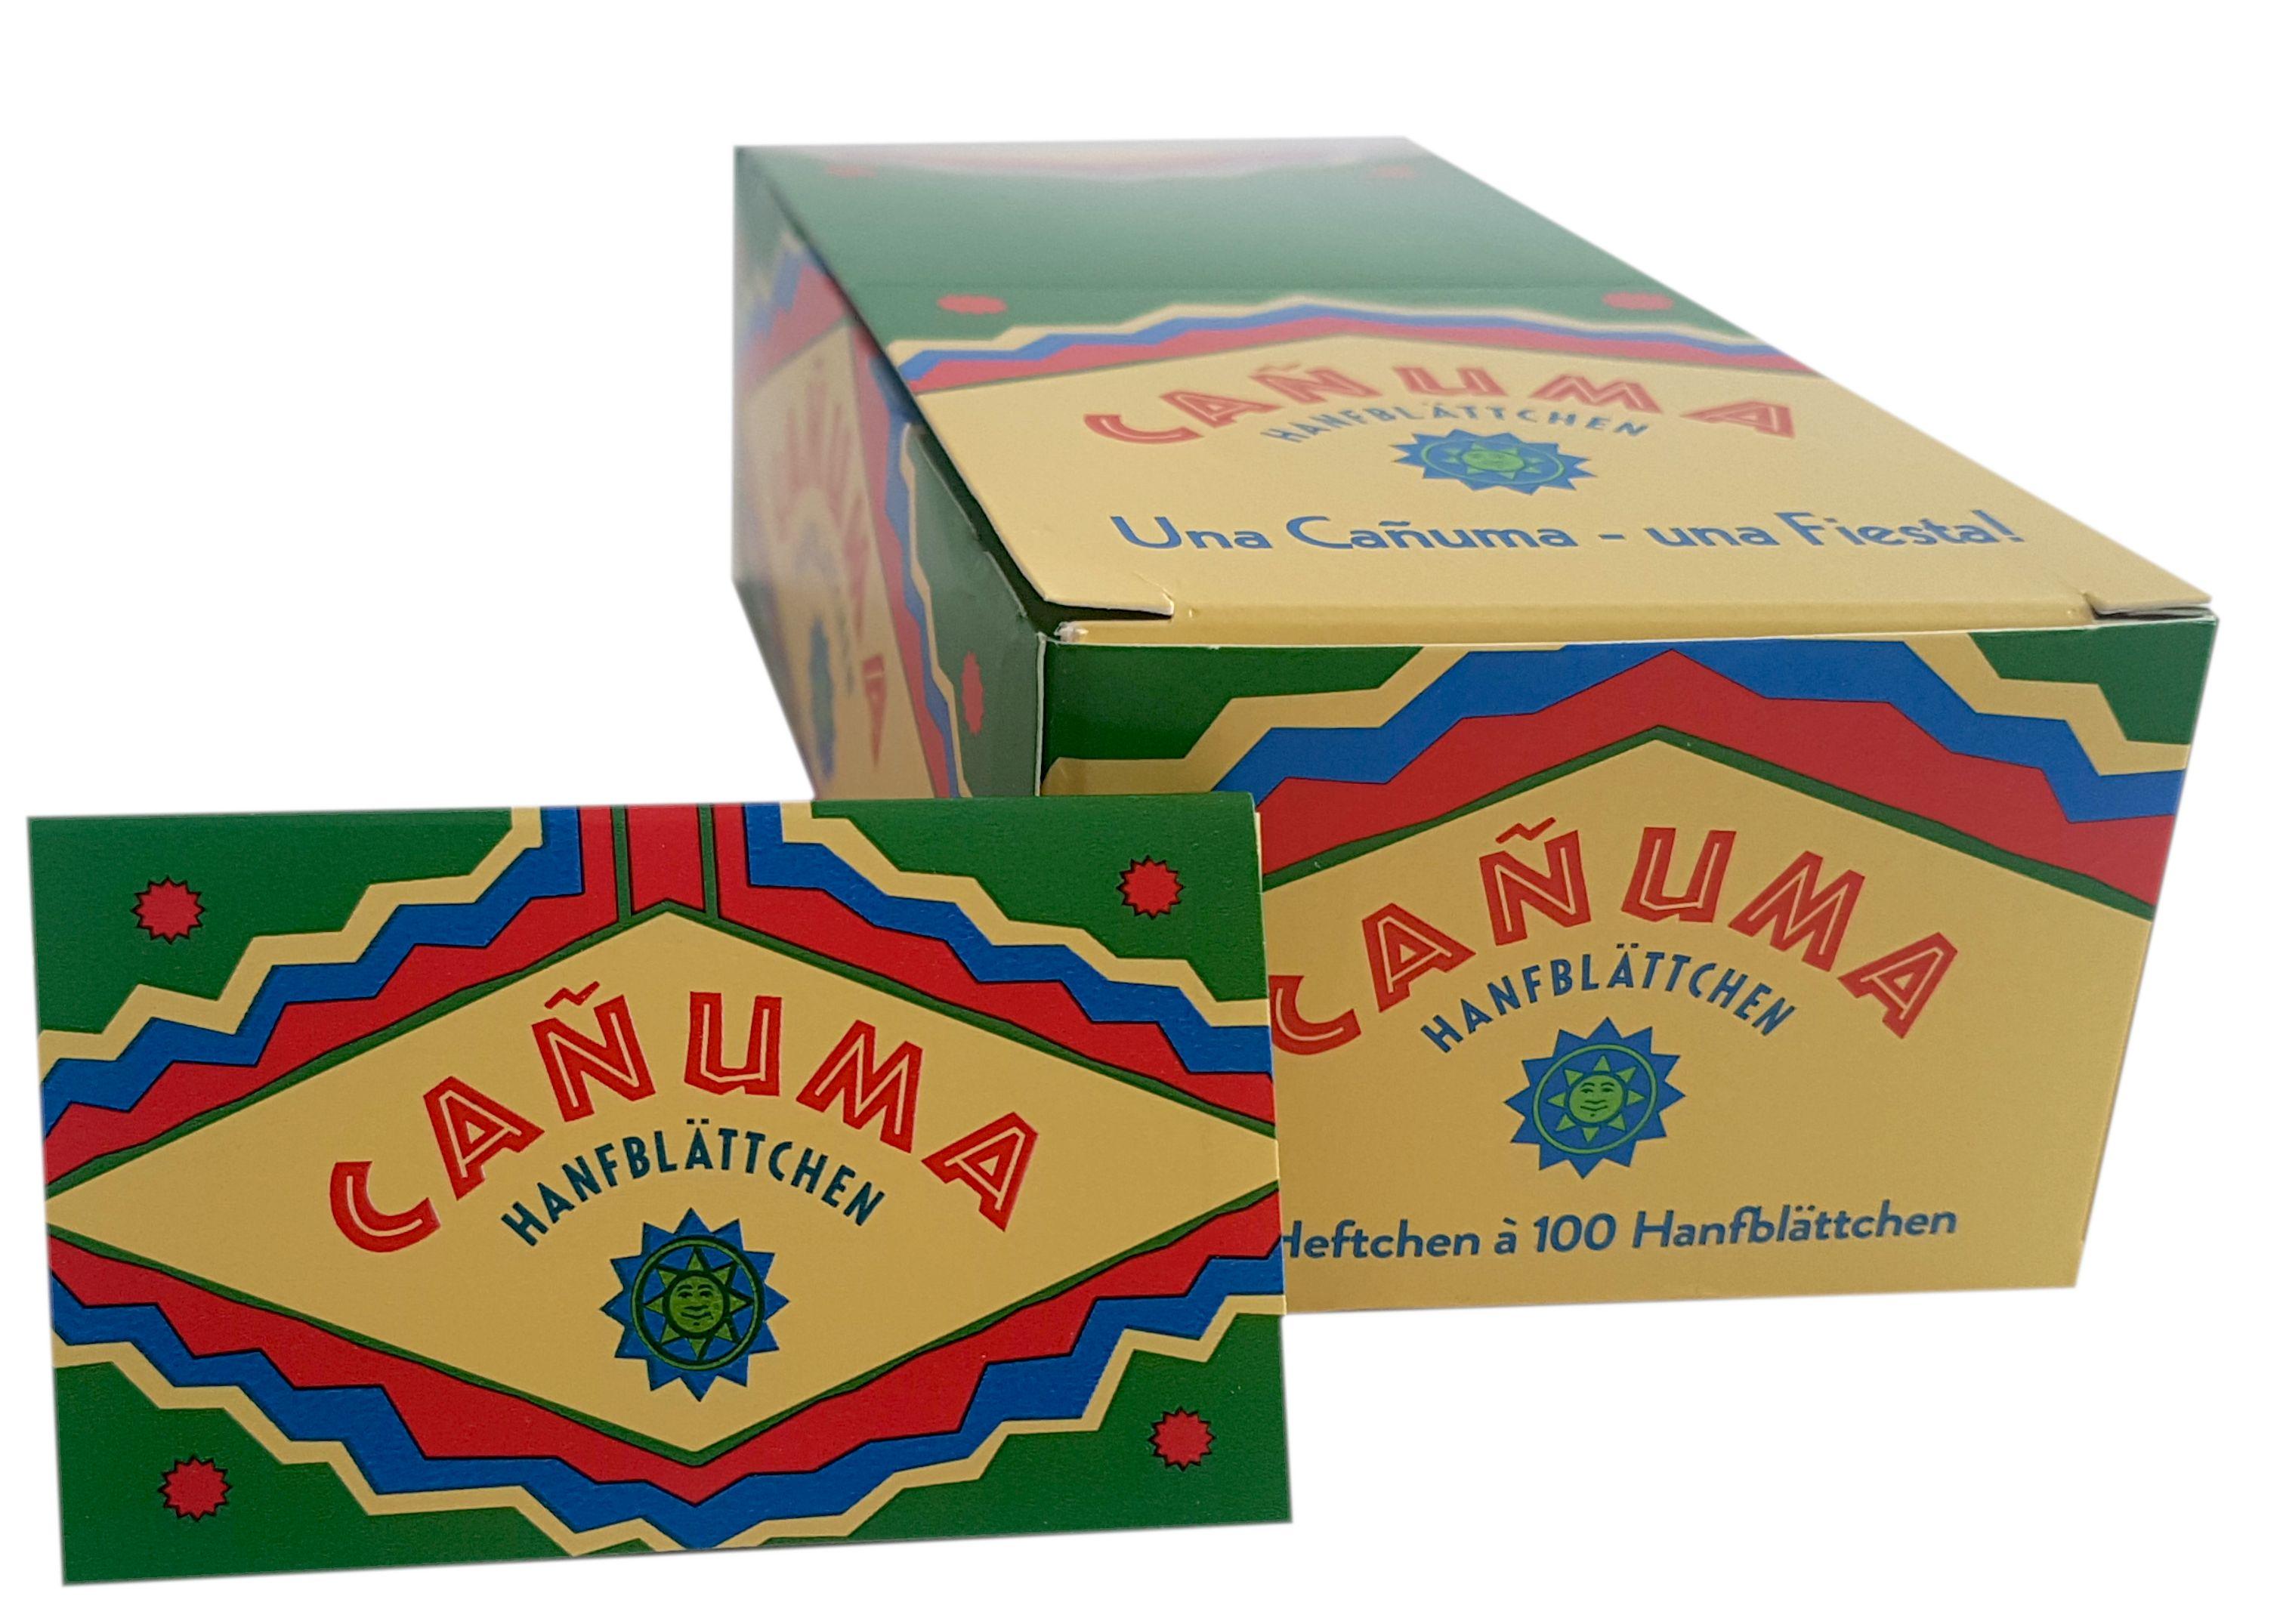 Canuma Hanfblättchen 1 Packung